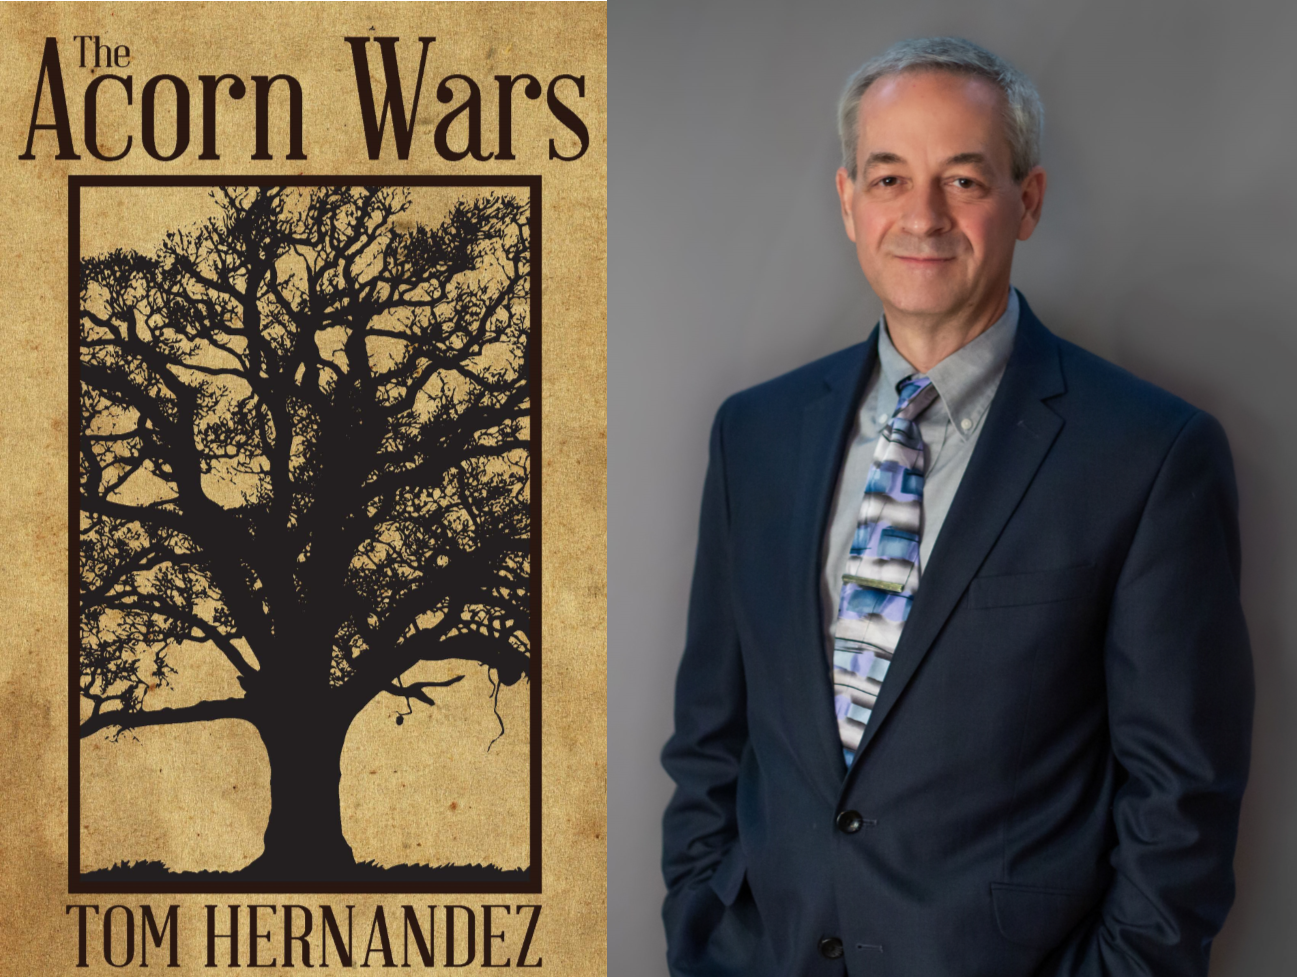 The Acorn Wars by Tom Hernandez